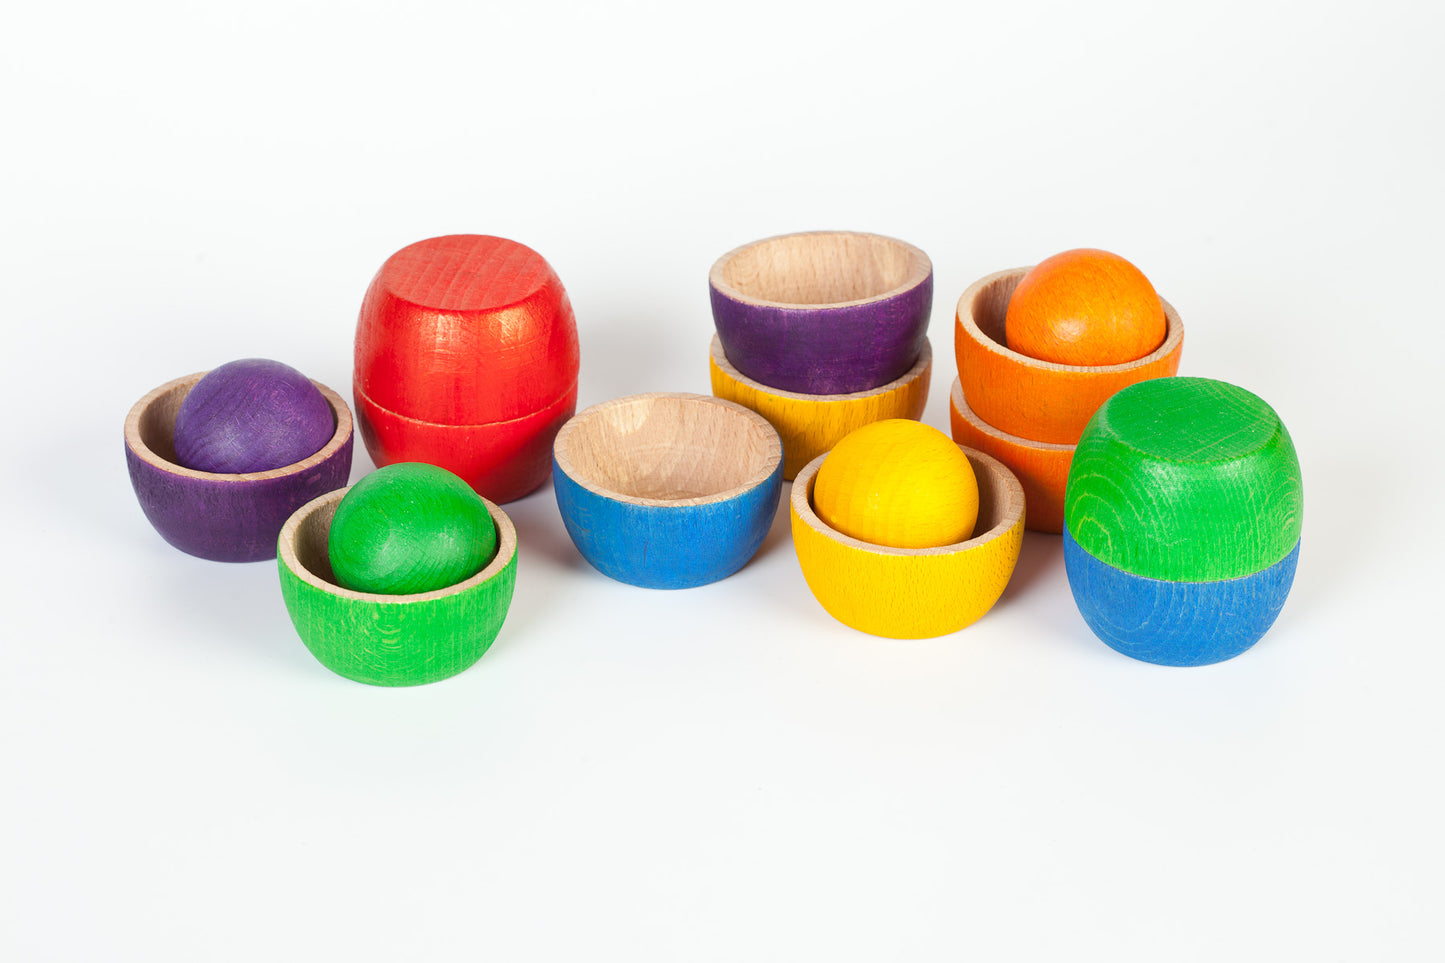 Grapat - Wood Coloured Bowls and Balls